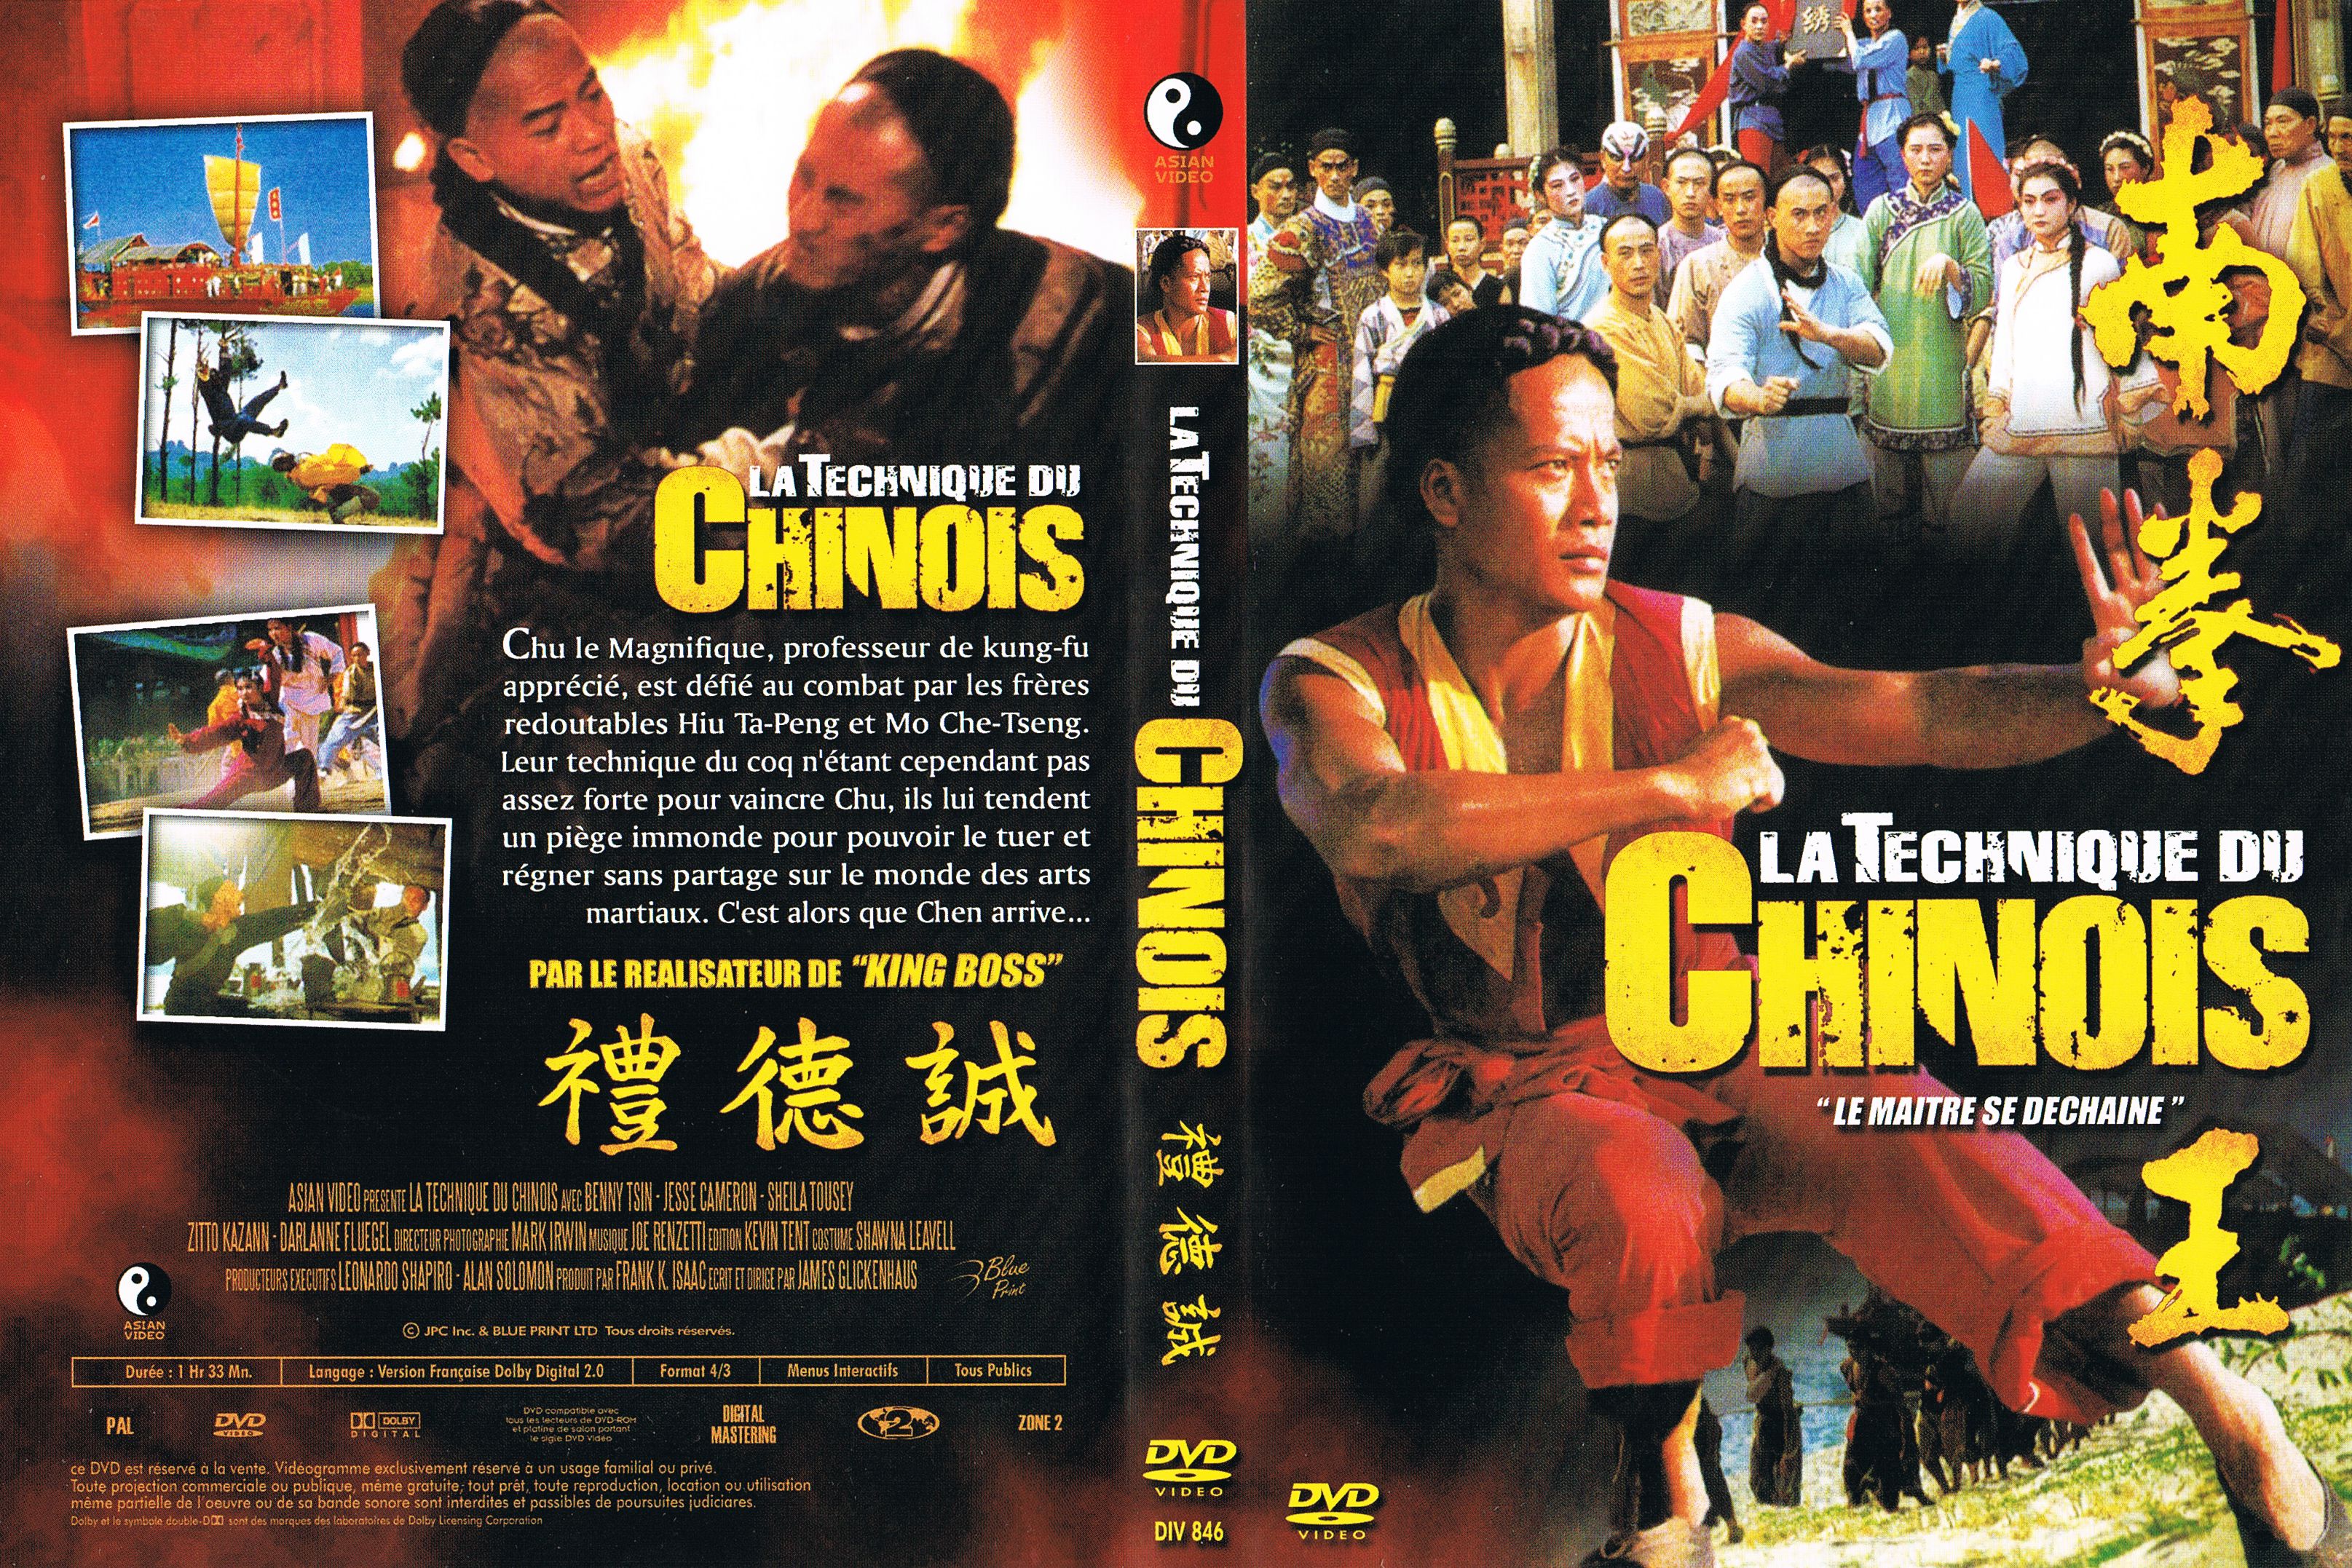 Jaquette DVD La technique du chinois